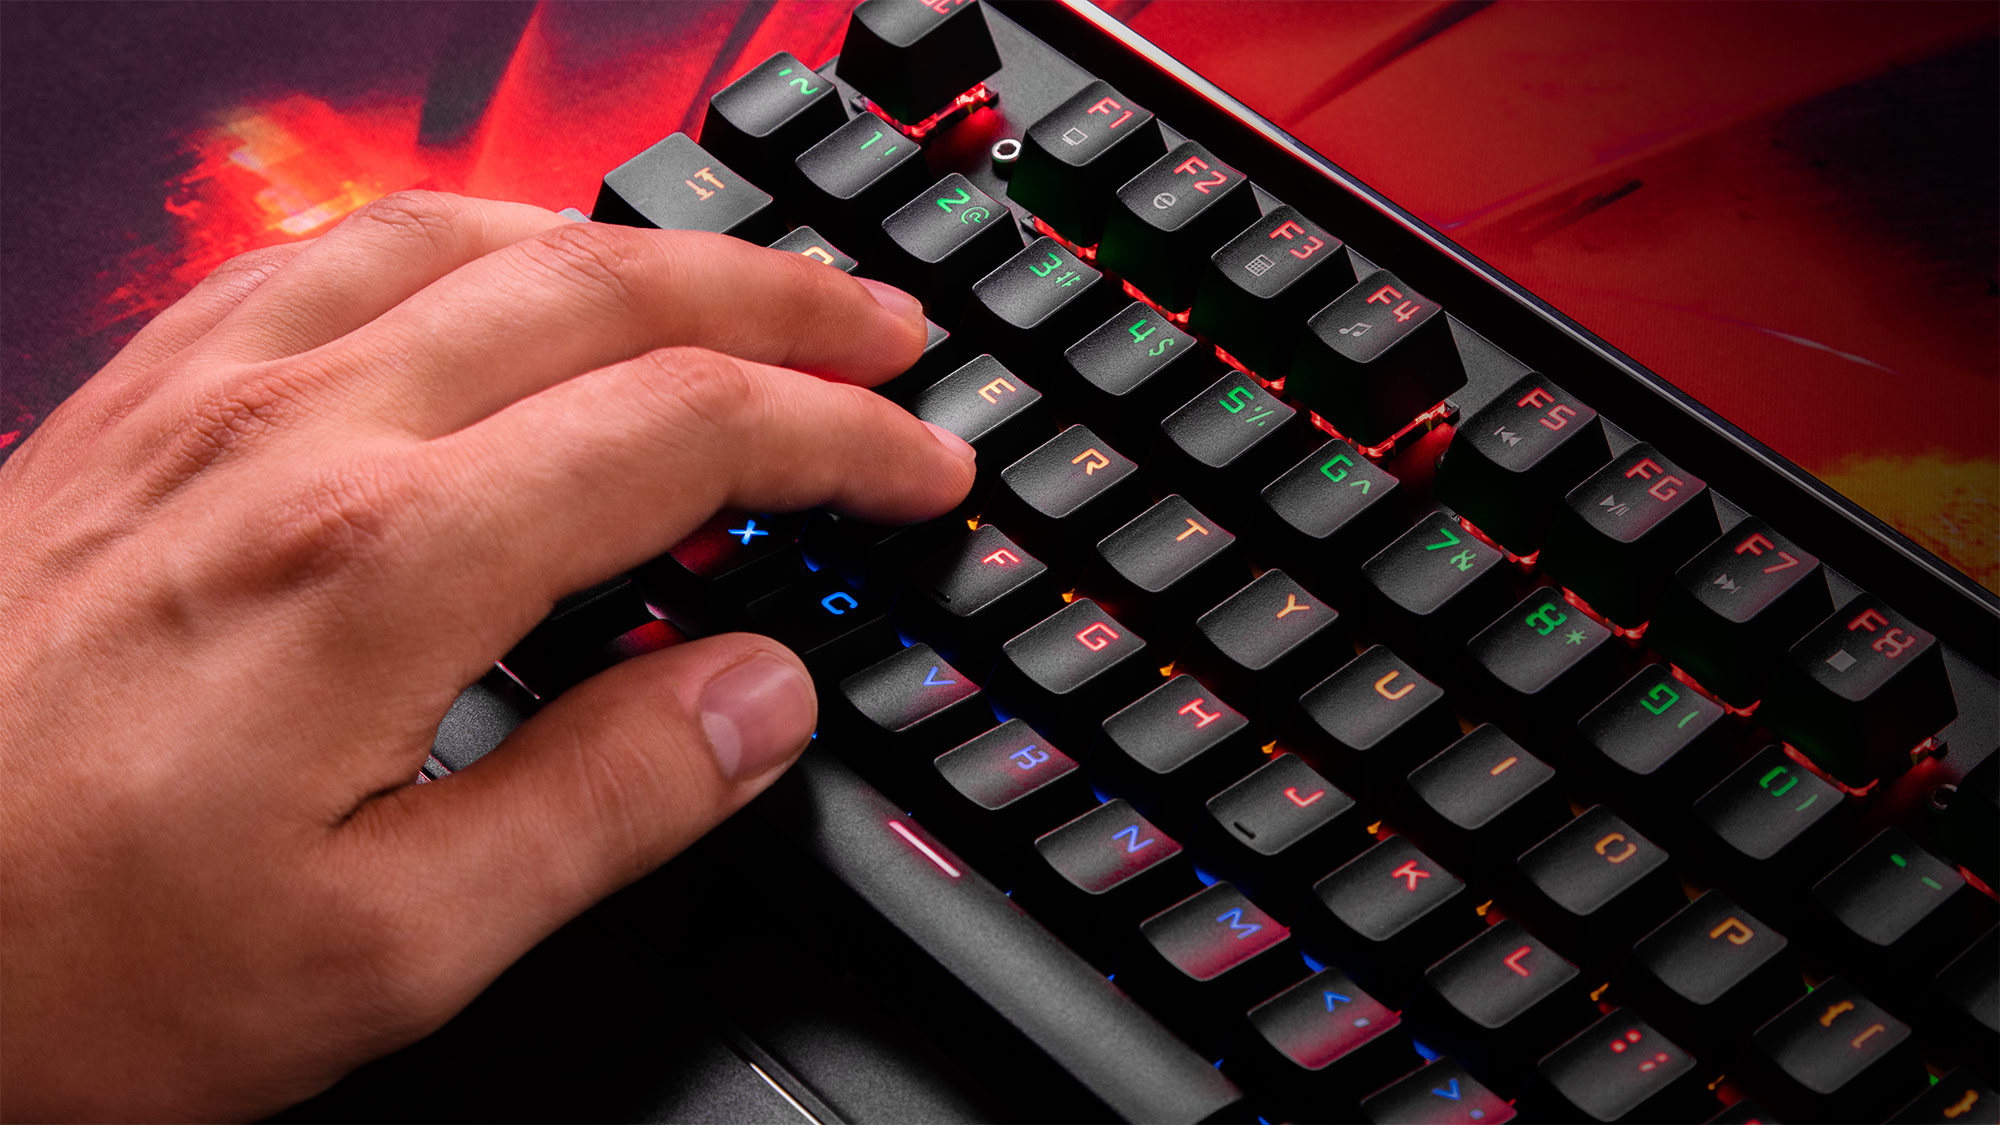 Nu lasa blocarea tastelor in combinatii sa iti intrerupa jocul! Tastatura Warrior GK-100 are incorporata tehnologie anti-ghosting, care creste numarul de taste detectate, oferind un confort ridicat in timpul jocului si un mai bun control pe toata durata sa. 